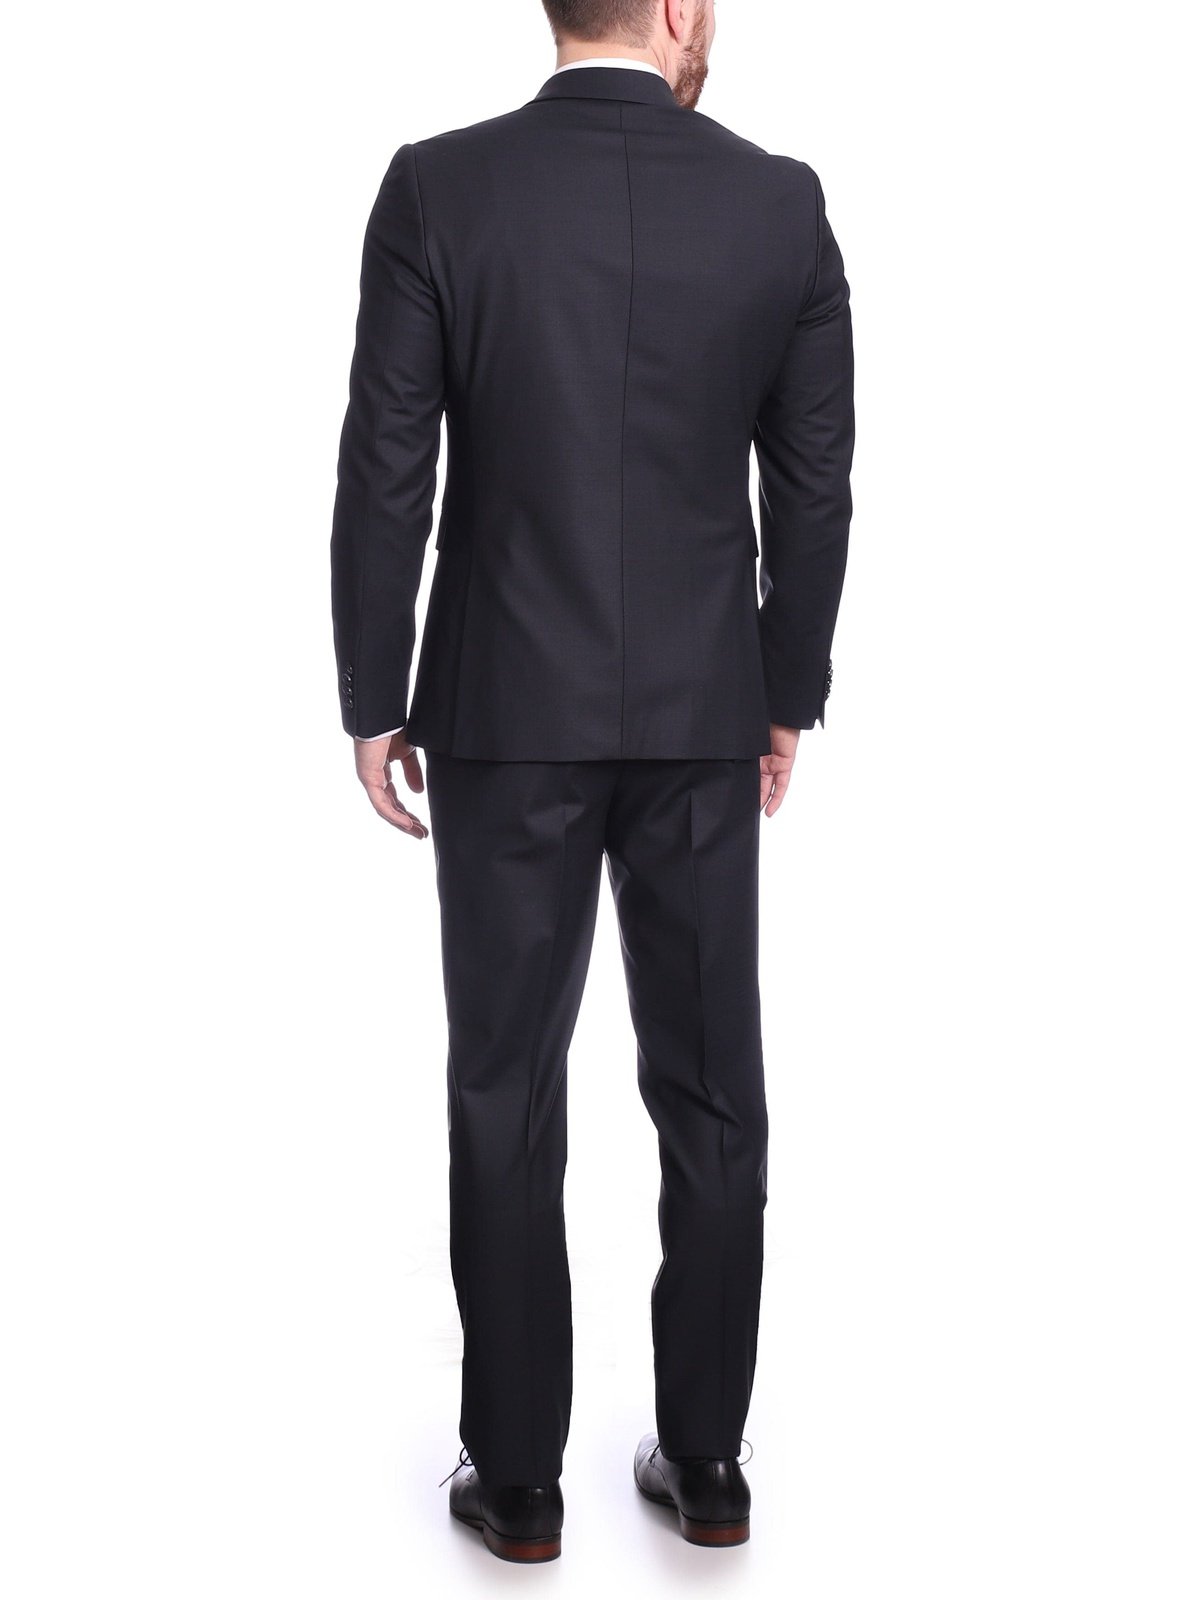 Raphael Mens Solid Black Slim Fit 2 Piece Suit With Peak Lapels